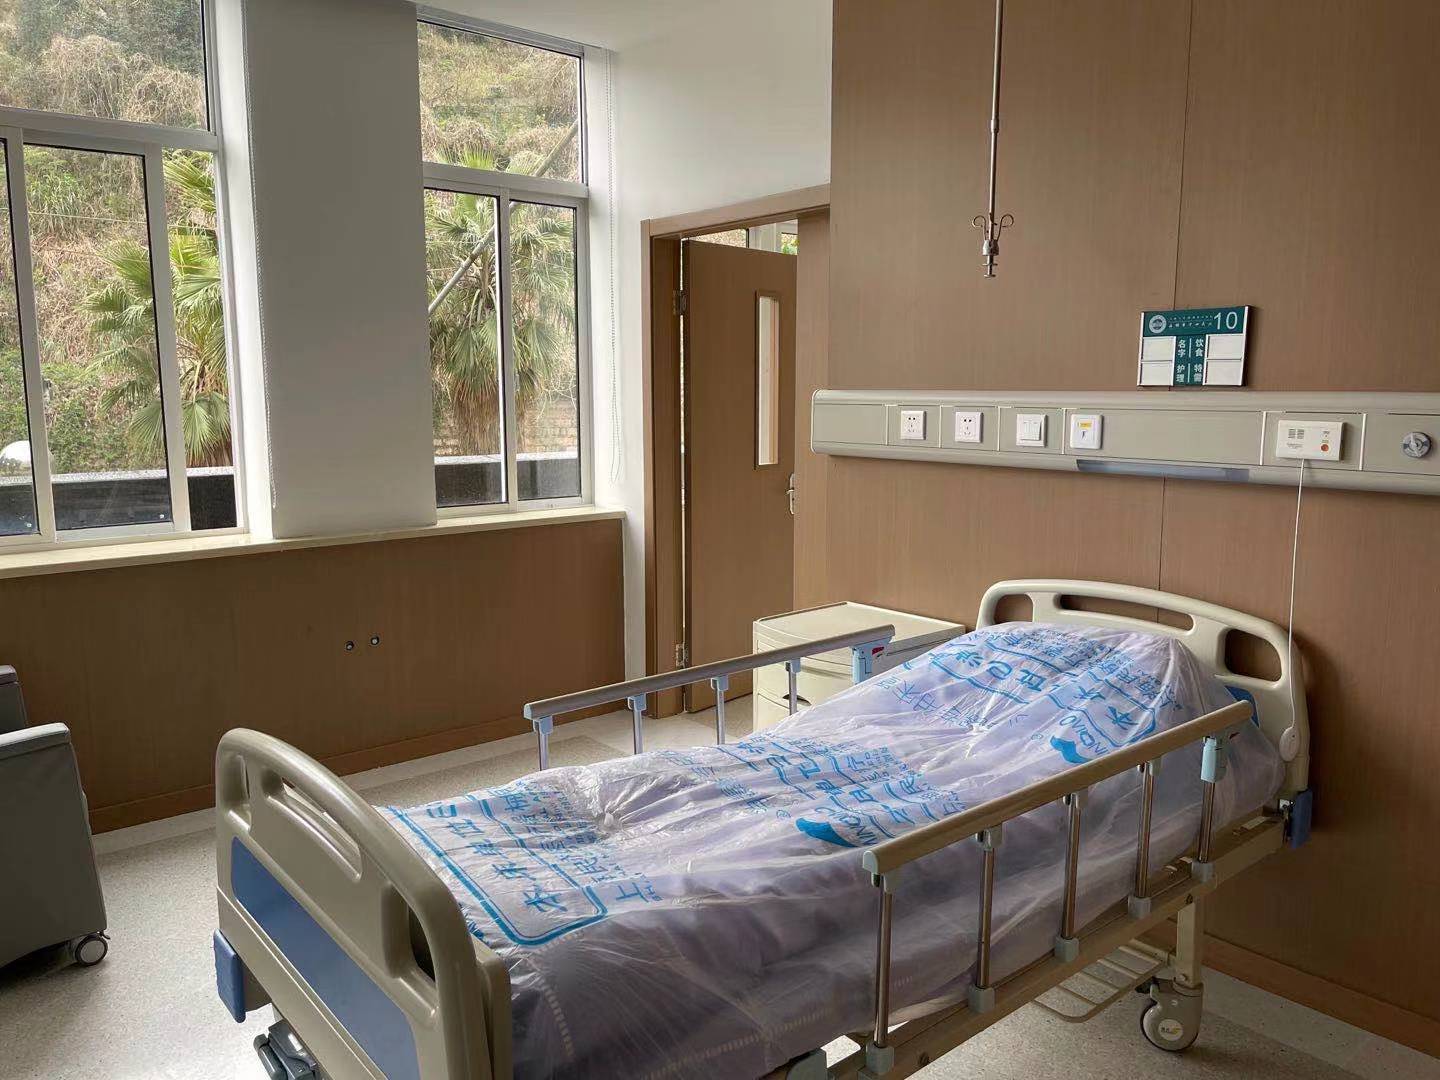 呼和浩特市第一医院呼吸与危重症医学一科二科整合资源 赋能医院高质量发展-呼和浩特市第一医院